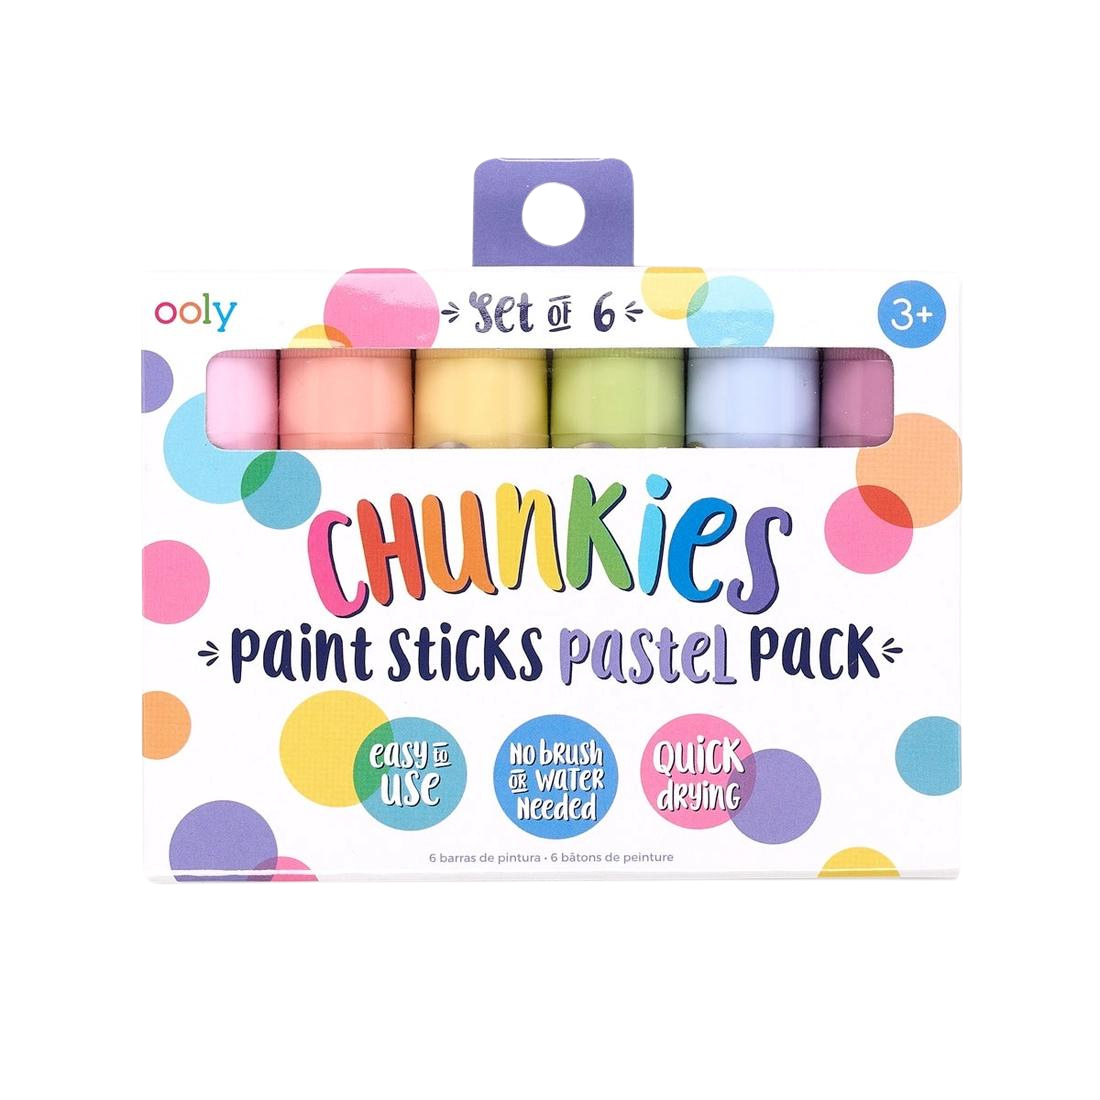 ooly Chunkies Paint Pastel Sticks - Set of 6